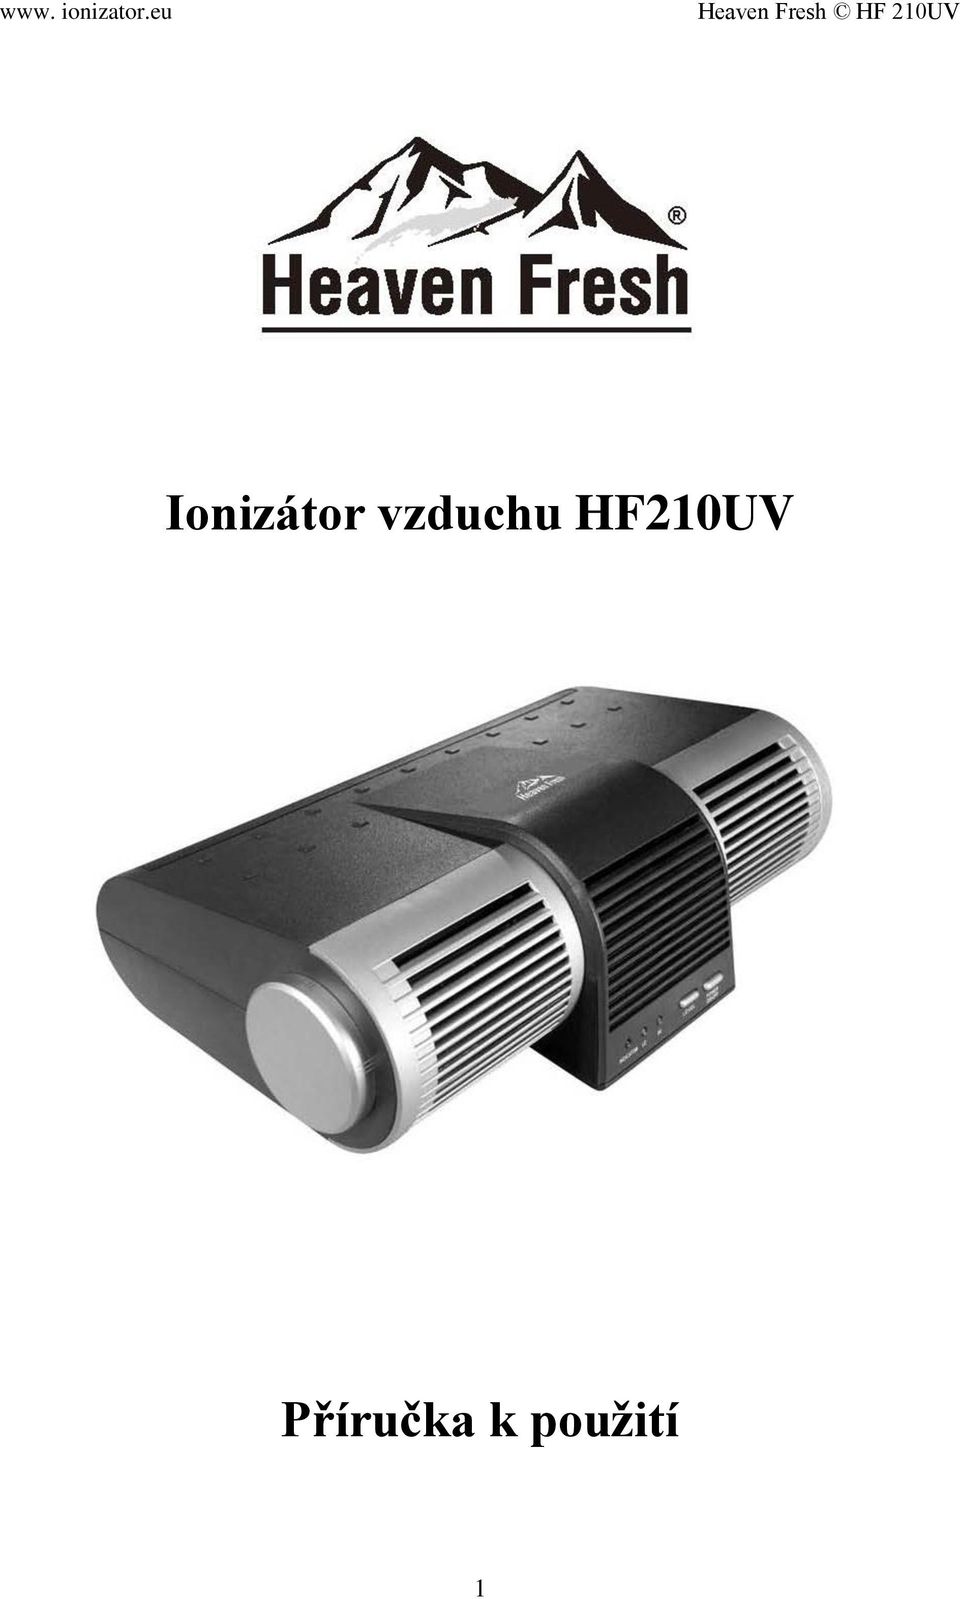 HF210UV